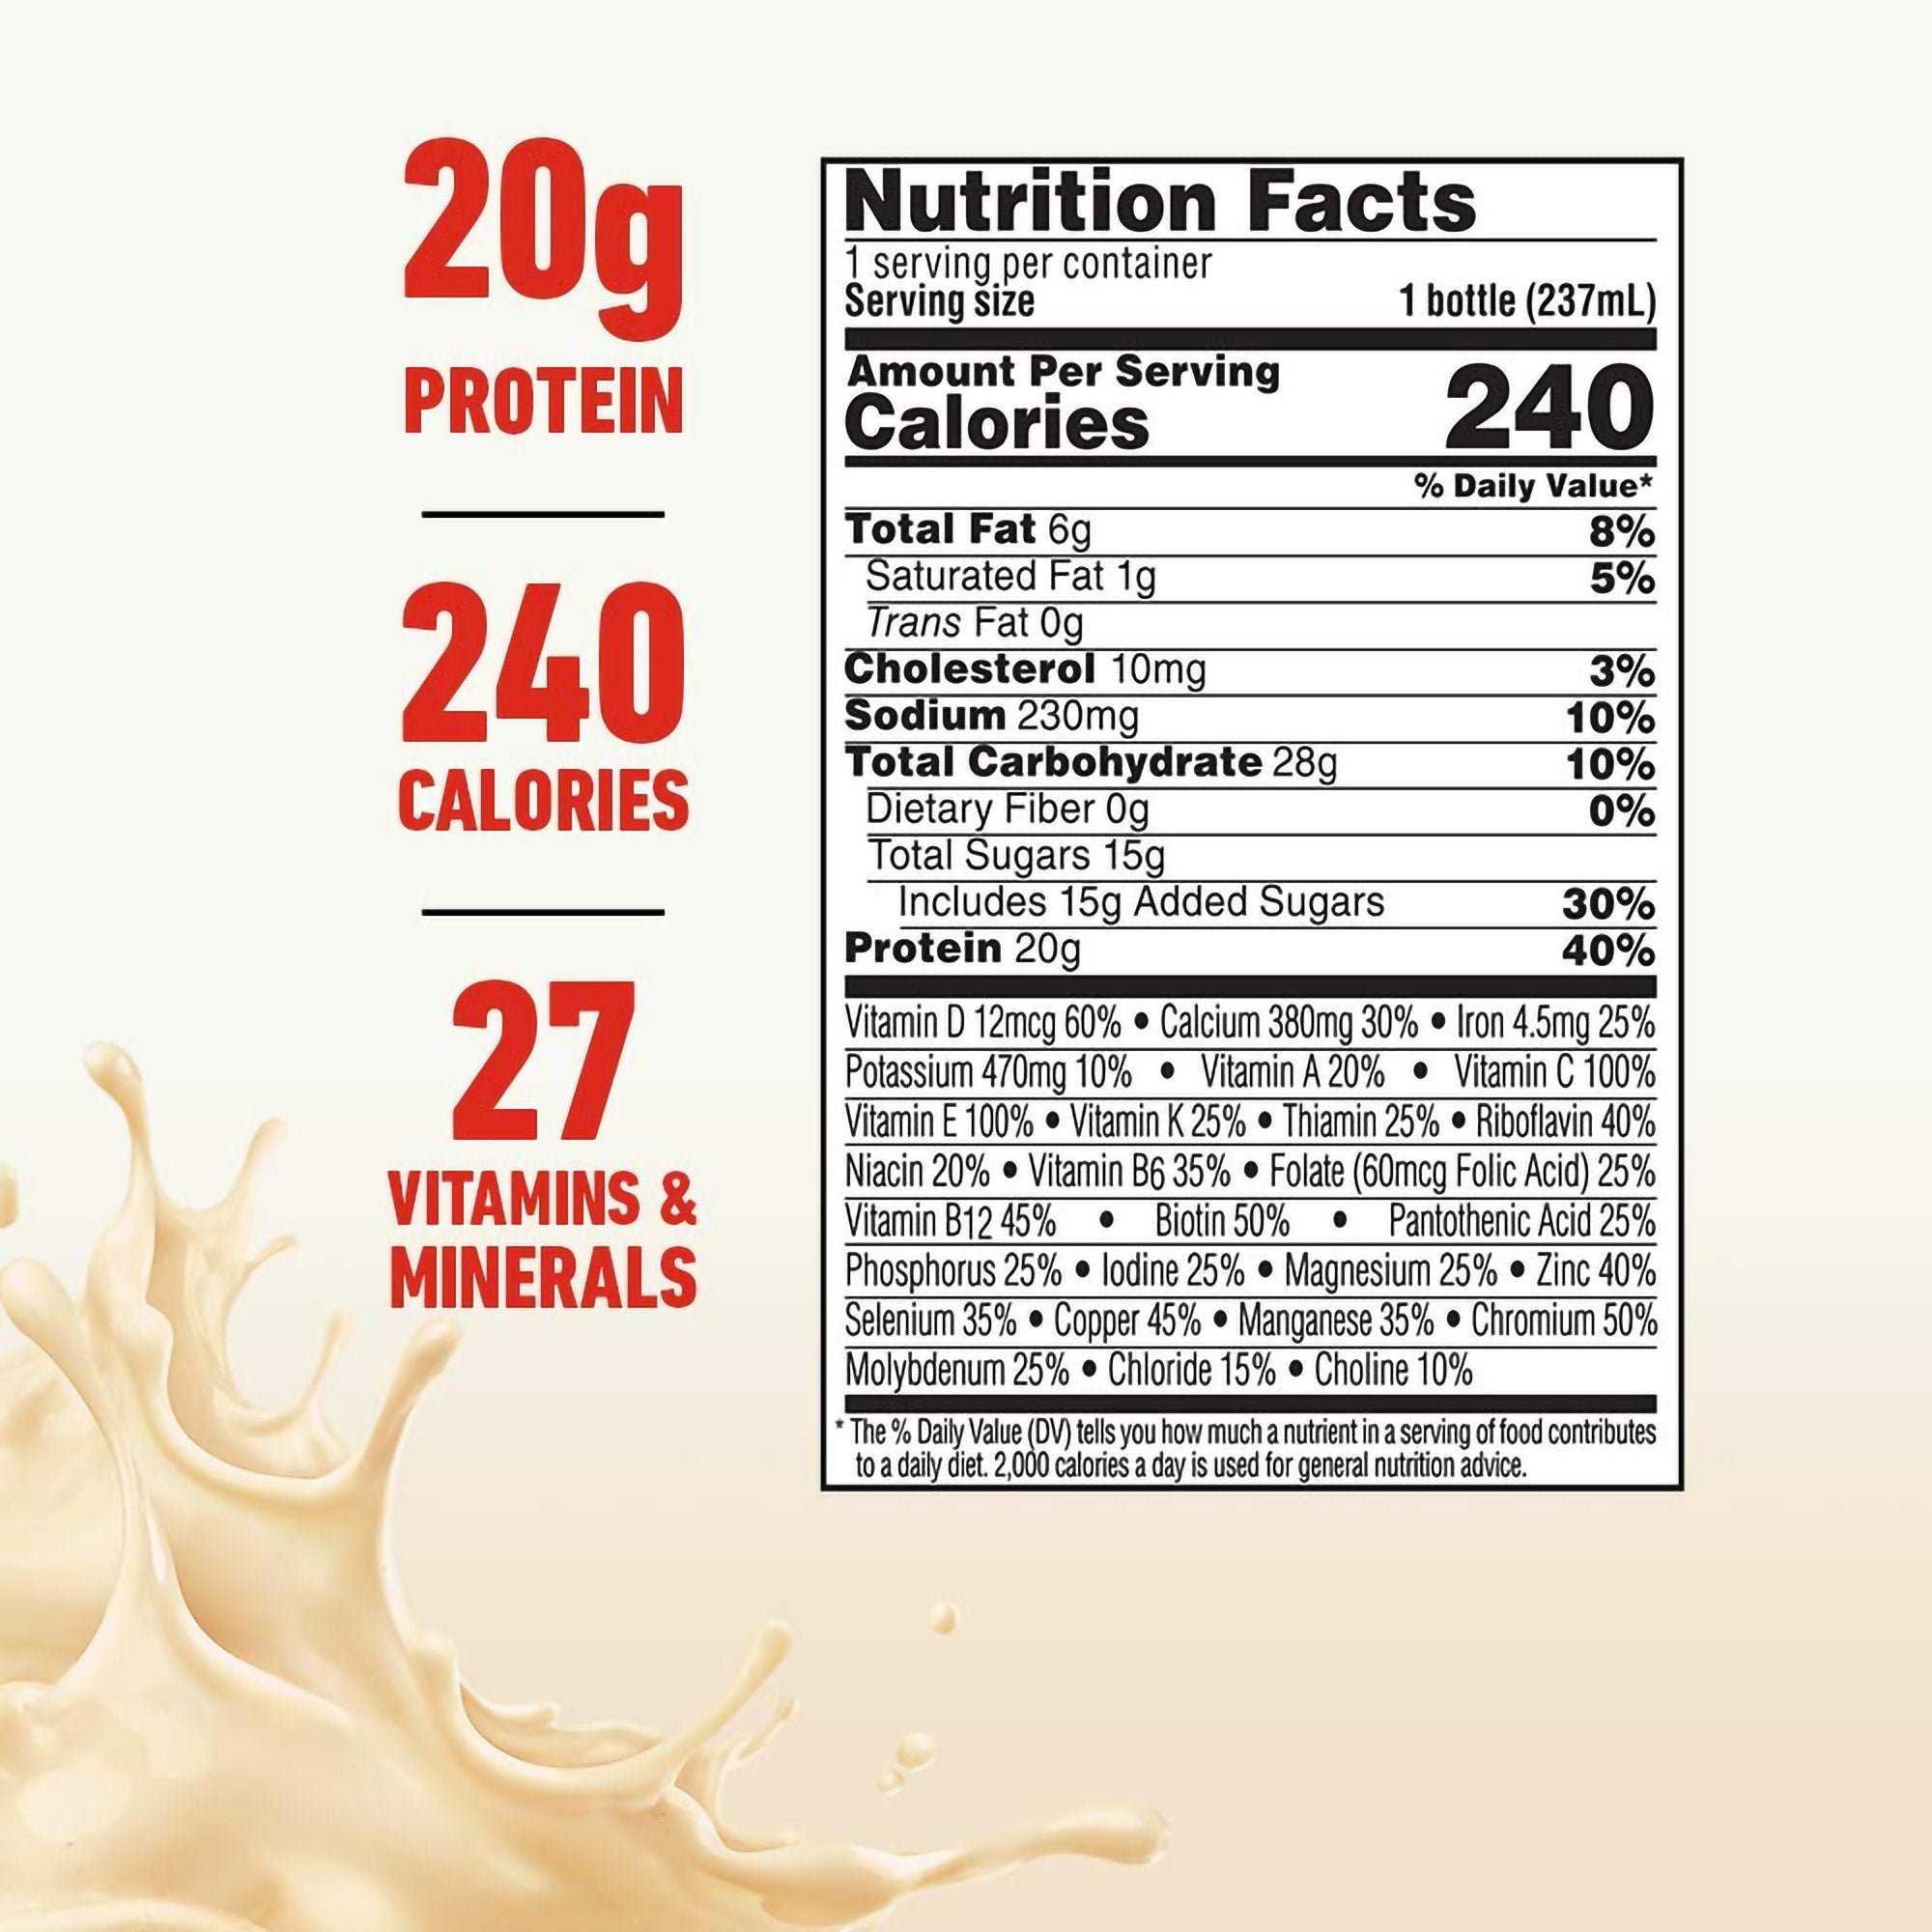 Oral Supplement Boost High Protein Very Vanilla Flavor Liquid 8 oz. Bottle